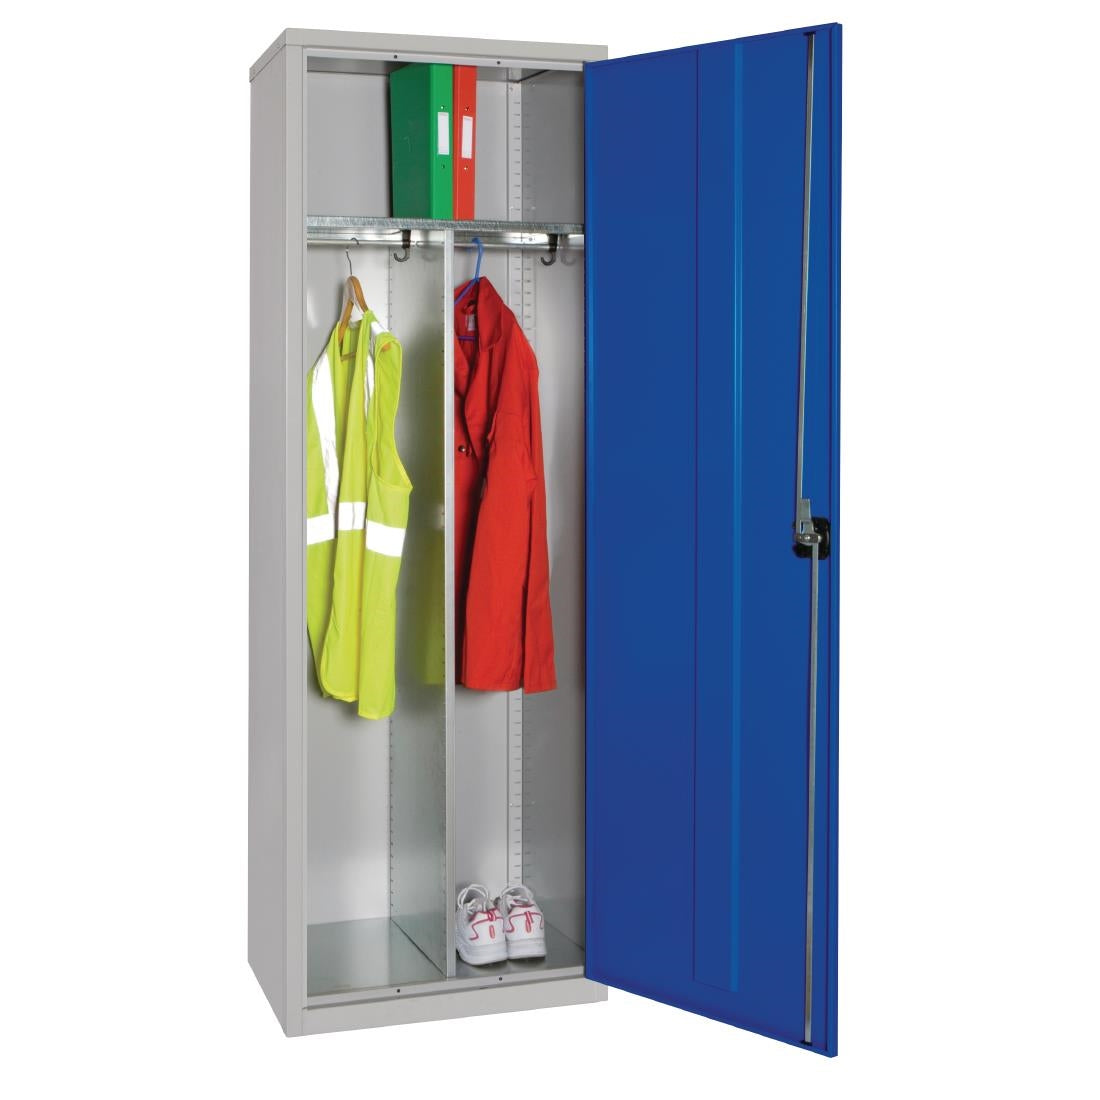 Clothing Locker 610mm JD Catering Equipment Solutions Ltd